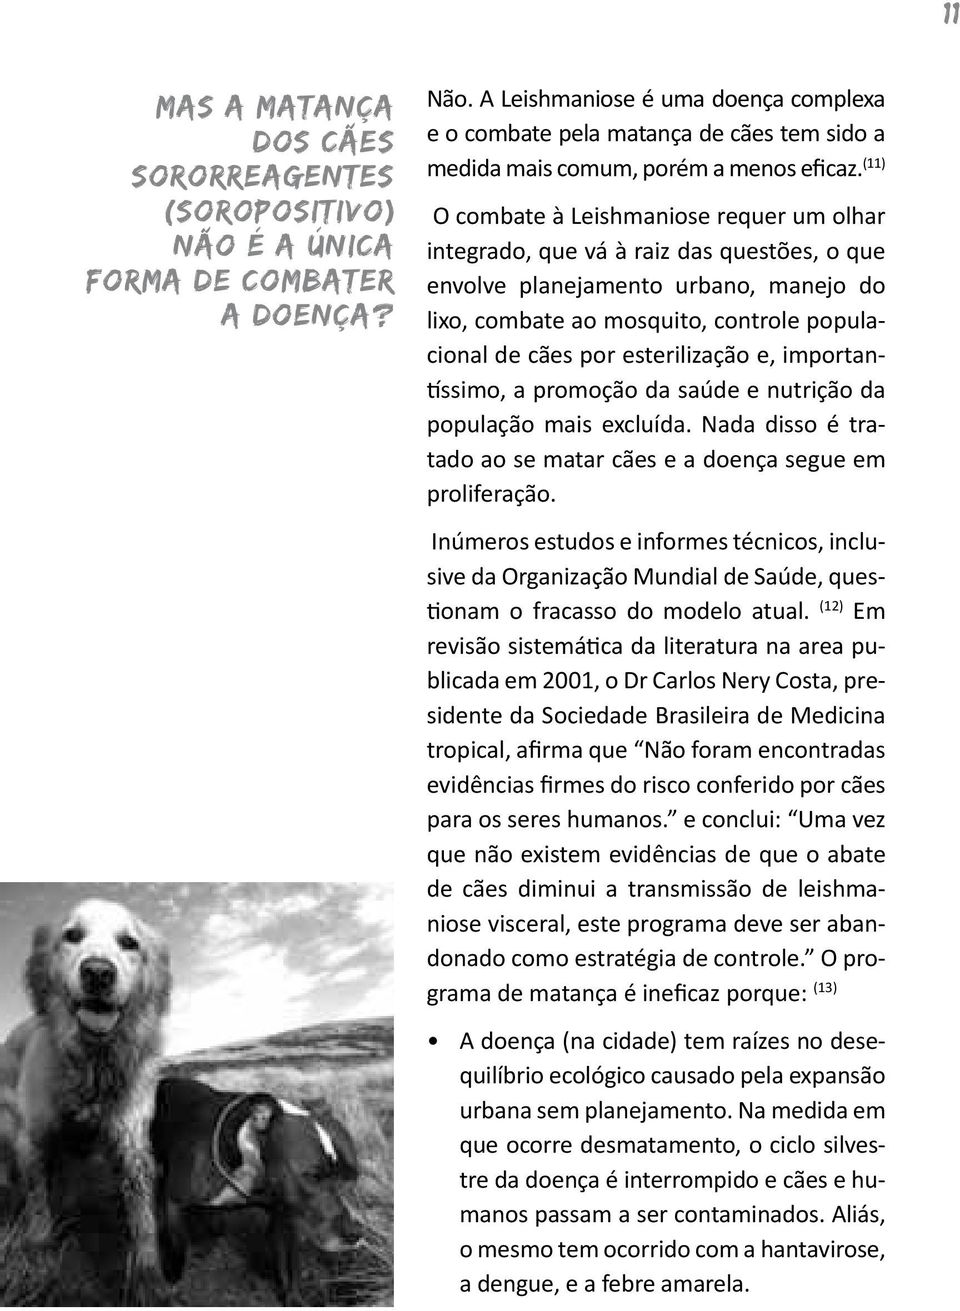 (11) O combate à Leishmaniose requer um olhar integrado, que vá à raiz das questões, o que envolve planejamento urbano, manejo do lixo, combate ao mosquito, controle populacional de cães por